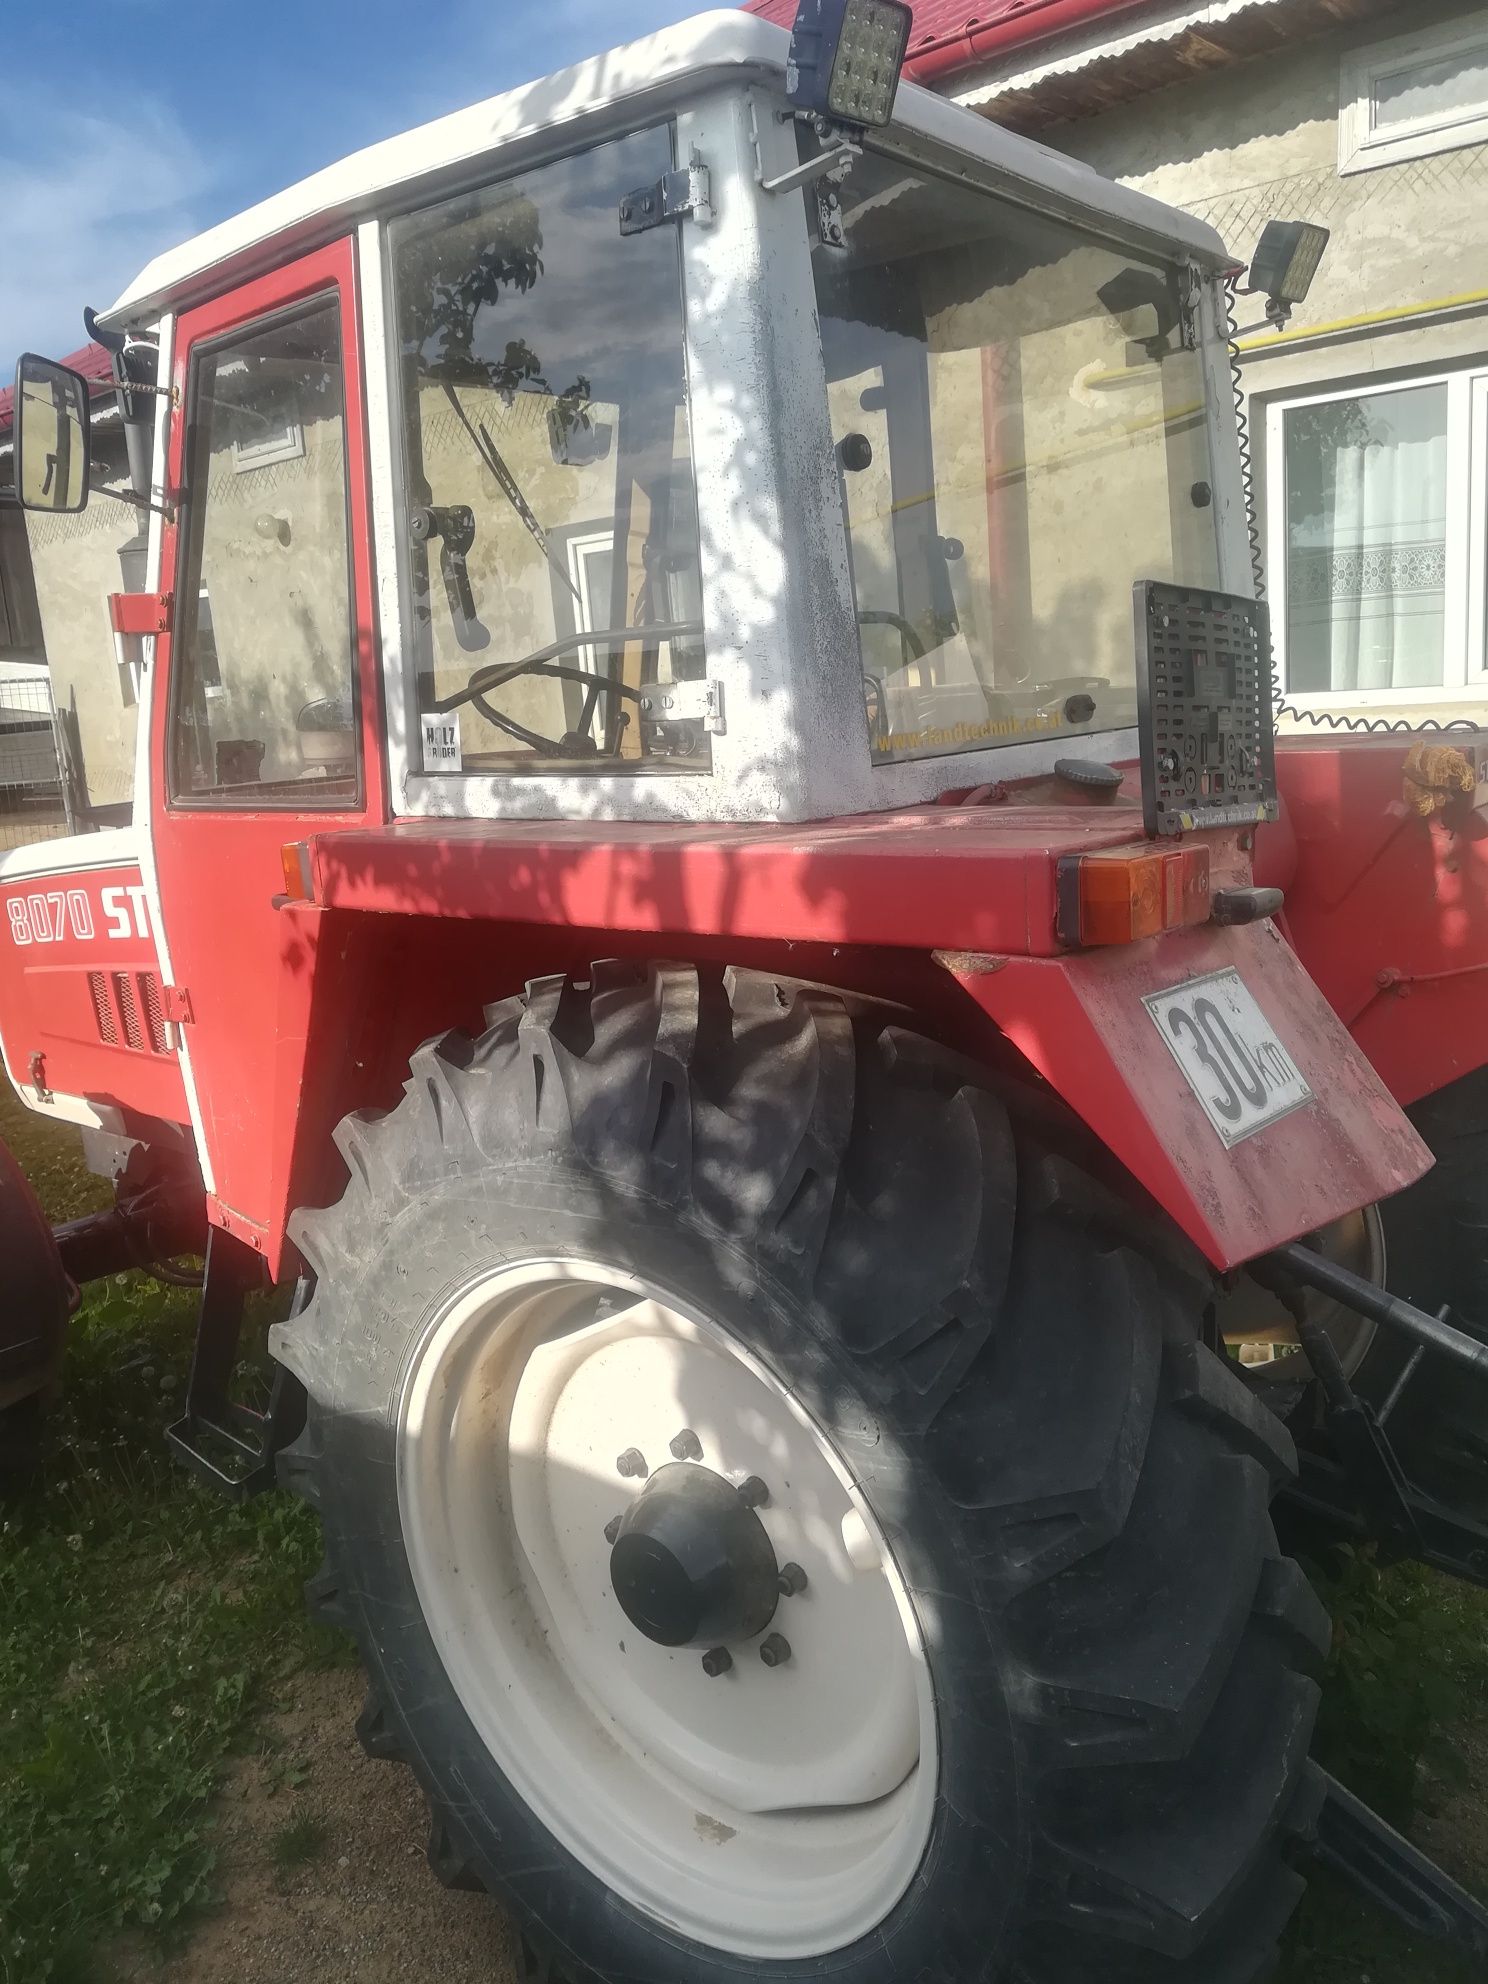 Tractor Steyr 8070 de vânzare